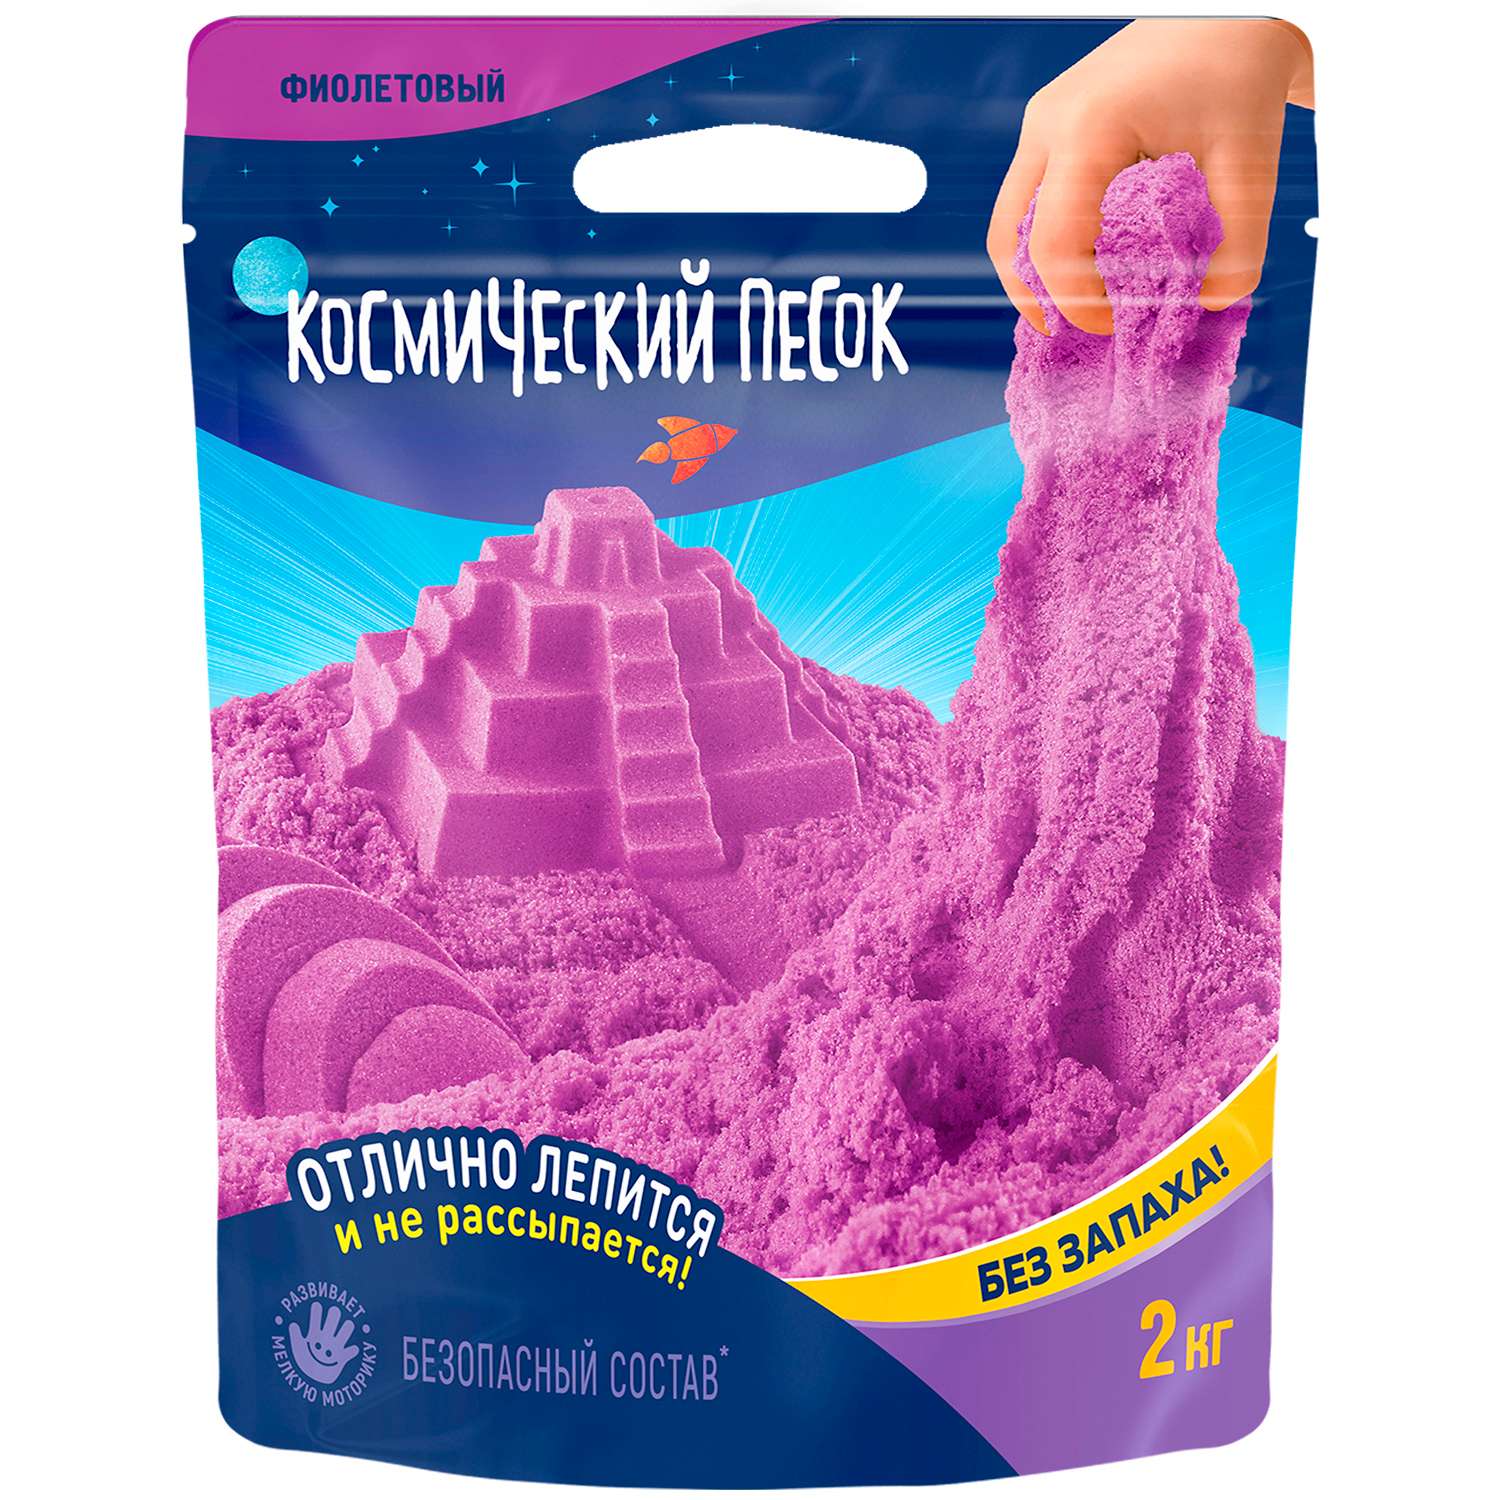 Игрушка Космический песок 2кг Фиолетовый К015 - фото 1